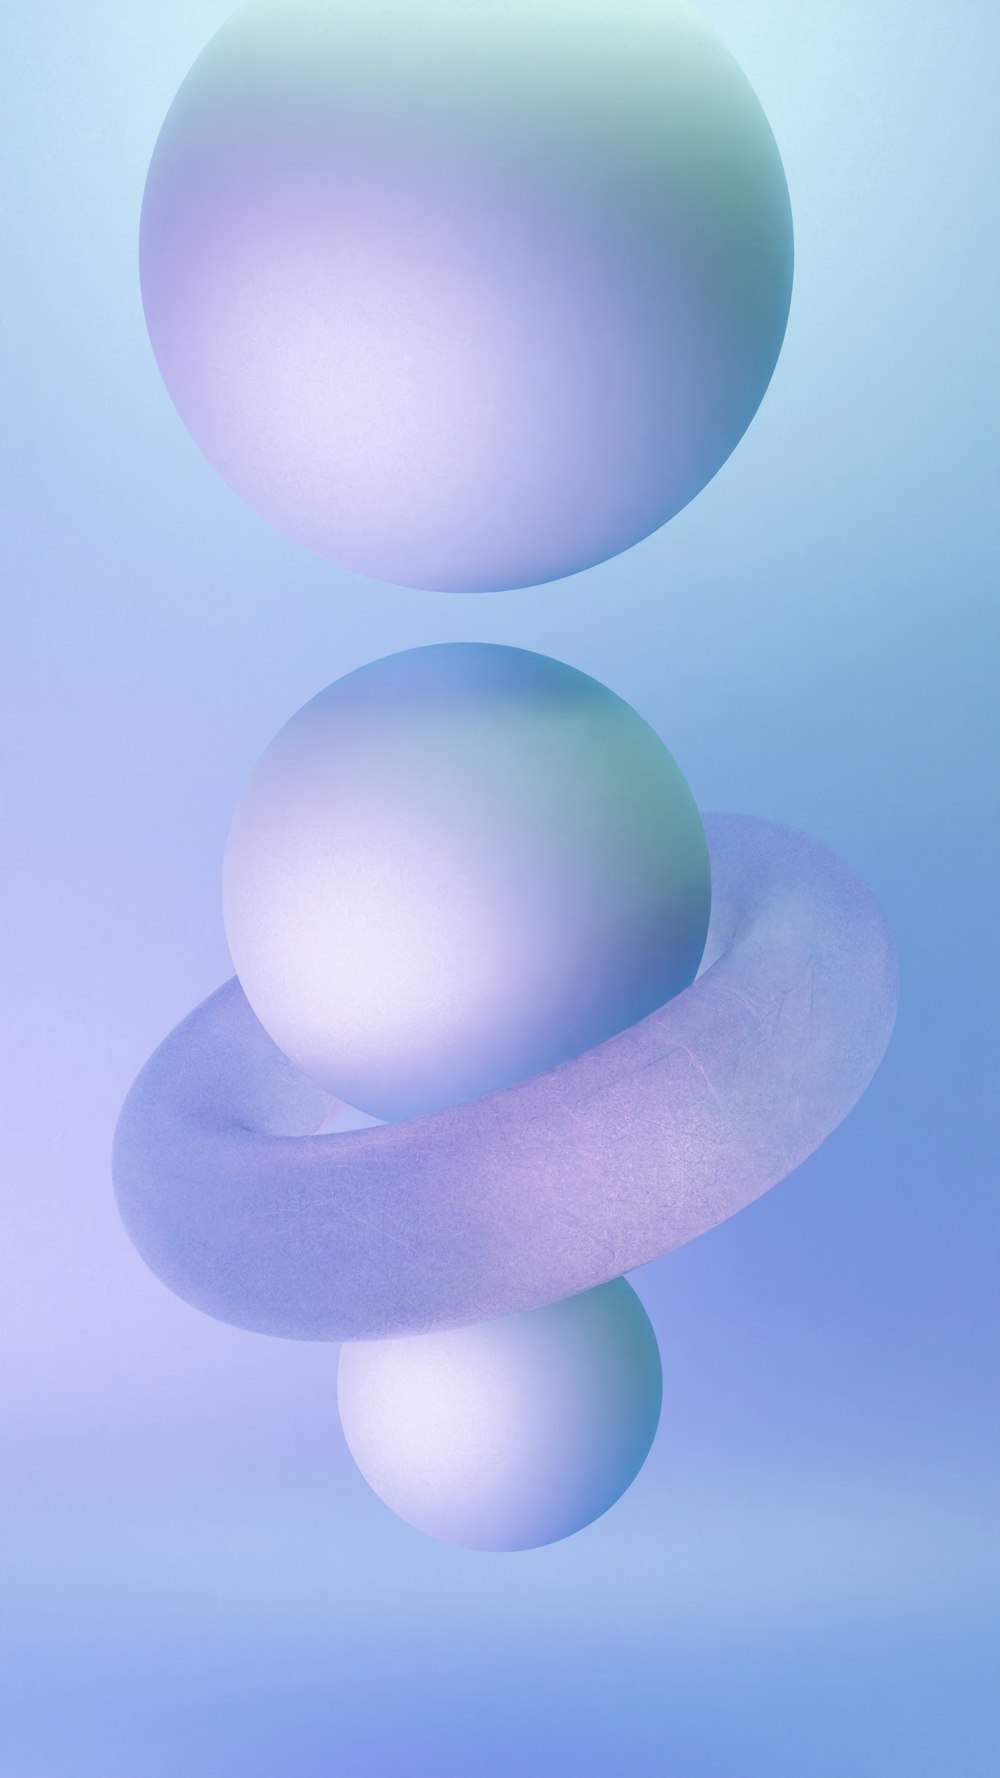 Una foto azul y blanca de dos bolas